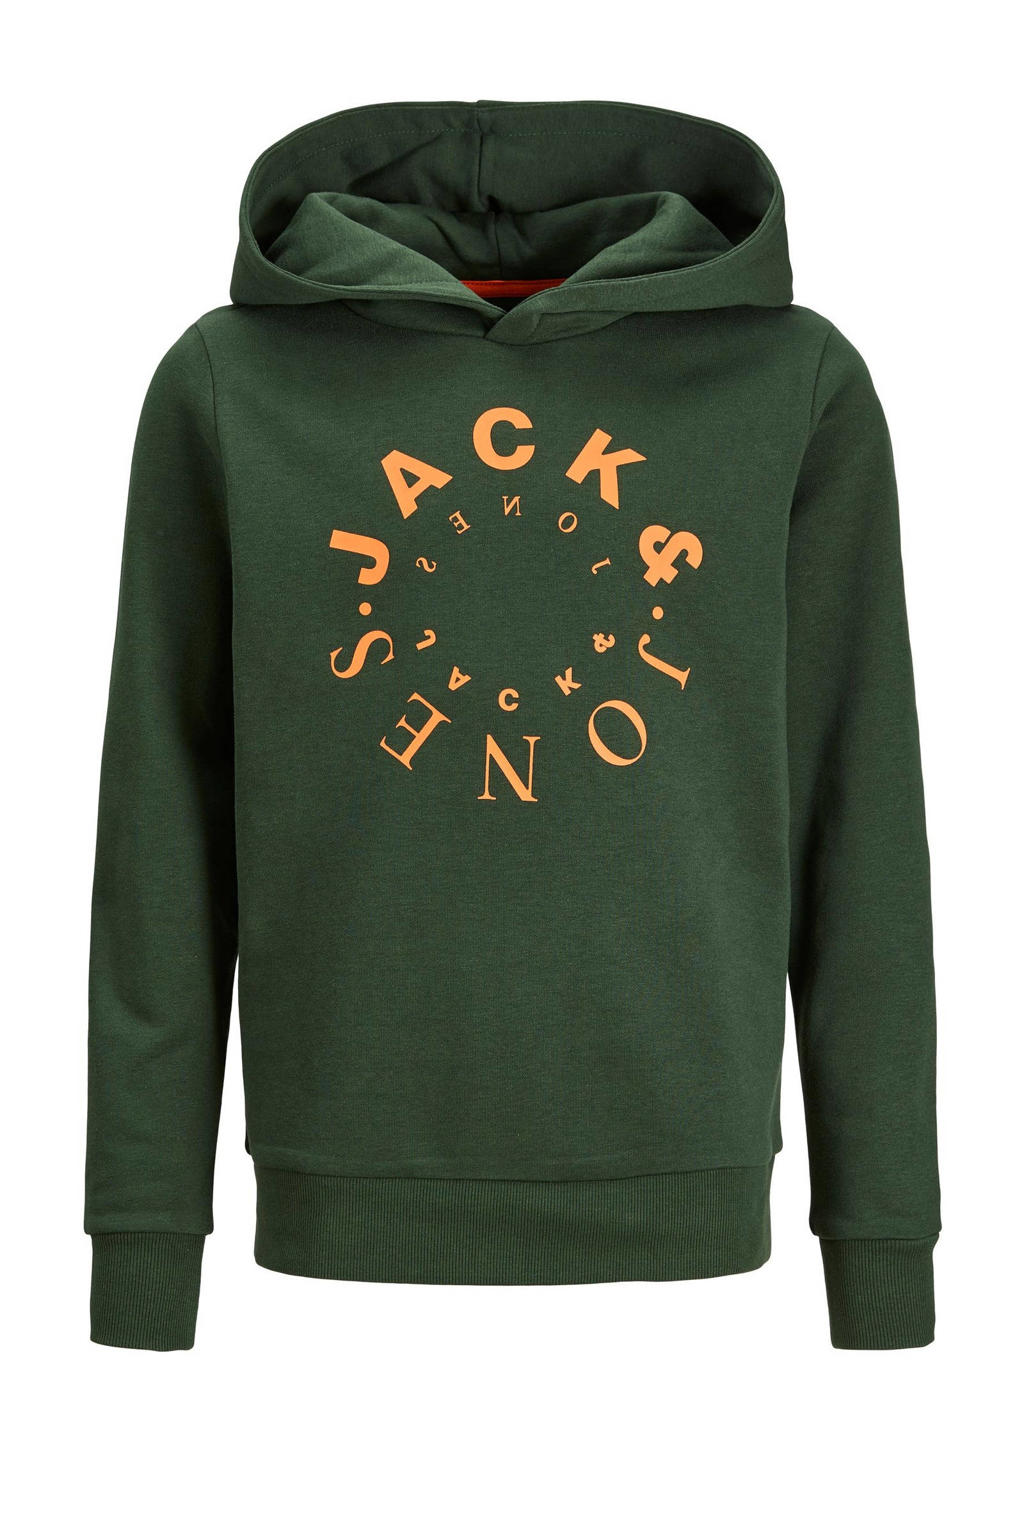 Groene jongens JACK & JONES JUNIOR hoodie van sweat materiaal met logo dessin, lange mouwen en capuchon